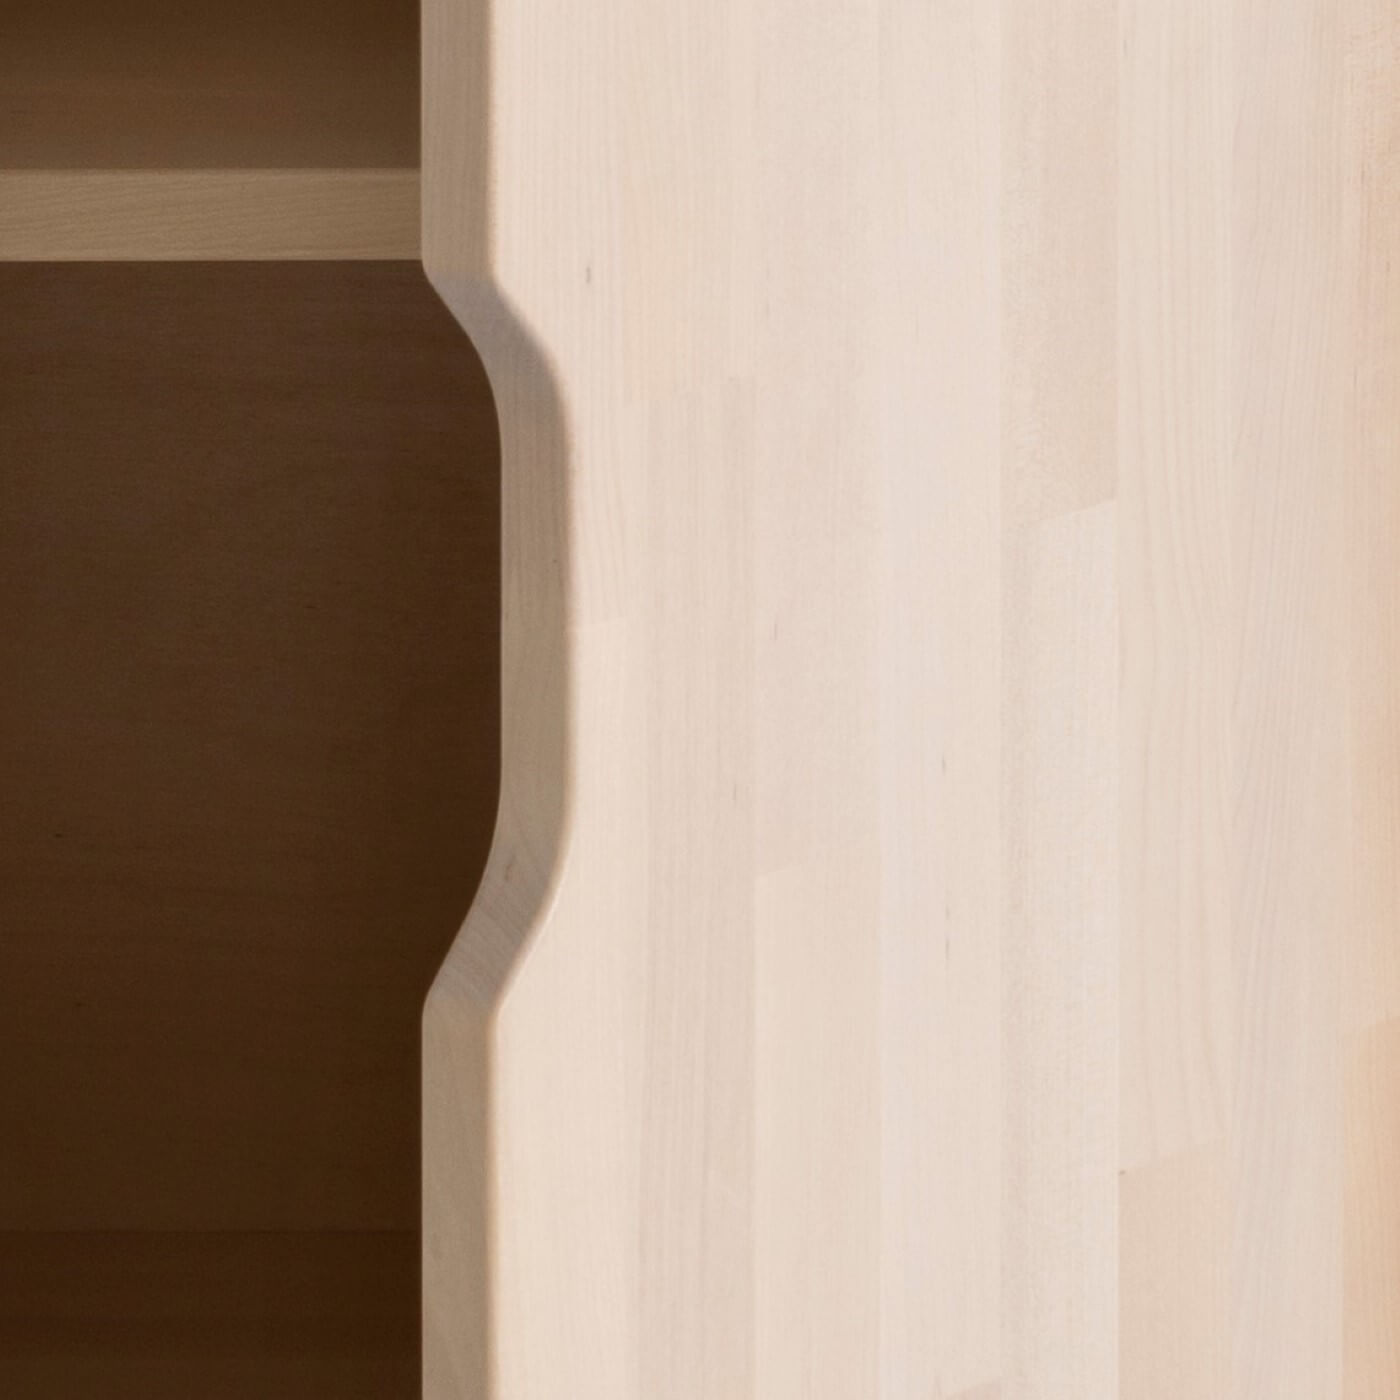 Szafka nocna 30 cm KOLO. Ręcznie robiony niewystający uchwyt drewnianych drzwiczek skandynawskiej wąskiej szafki nocnej 30 cm szerokości. Minimalistyczny nowoczesny design